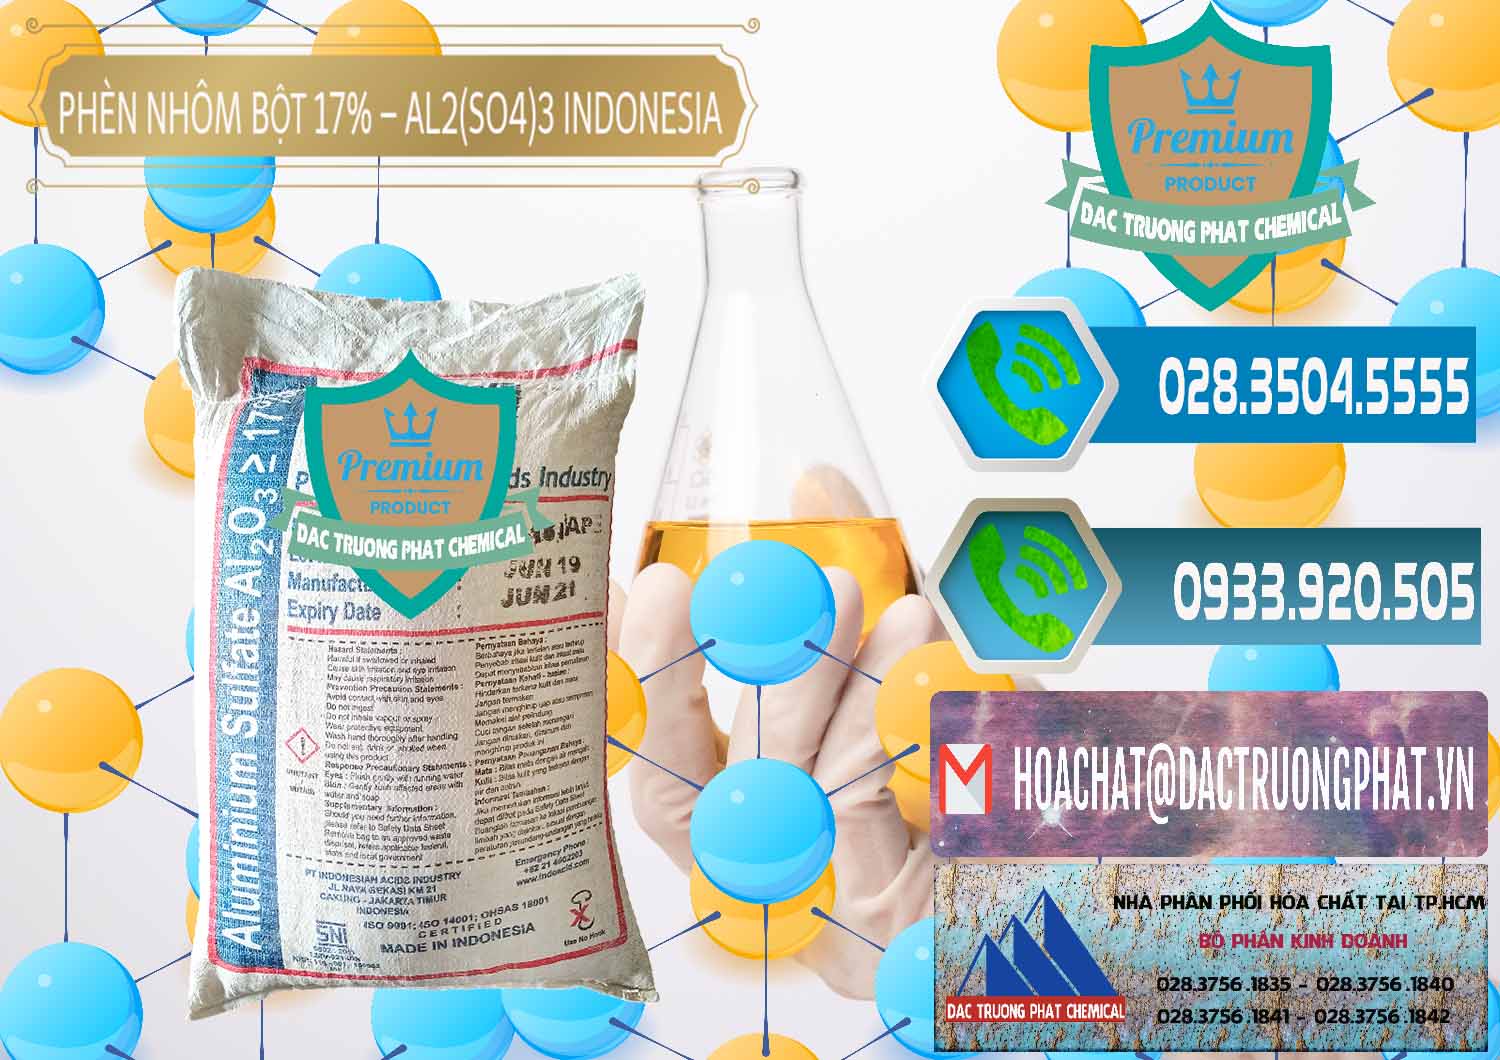 Cty chuyên bán ( phân phối ) Phèn Nhôm Bột - Al2(SO4)3 17% bao 25kg Indonesia - 0114 - Công ty chuyên kinh doanh và phân phối hóa chất tại TP.HCM - congtyhoachat.net